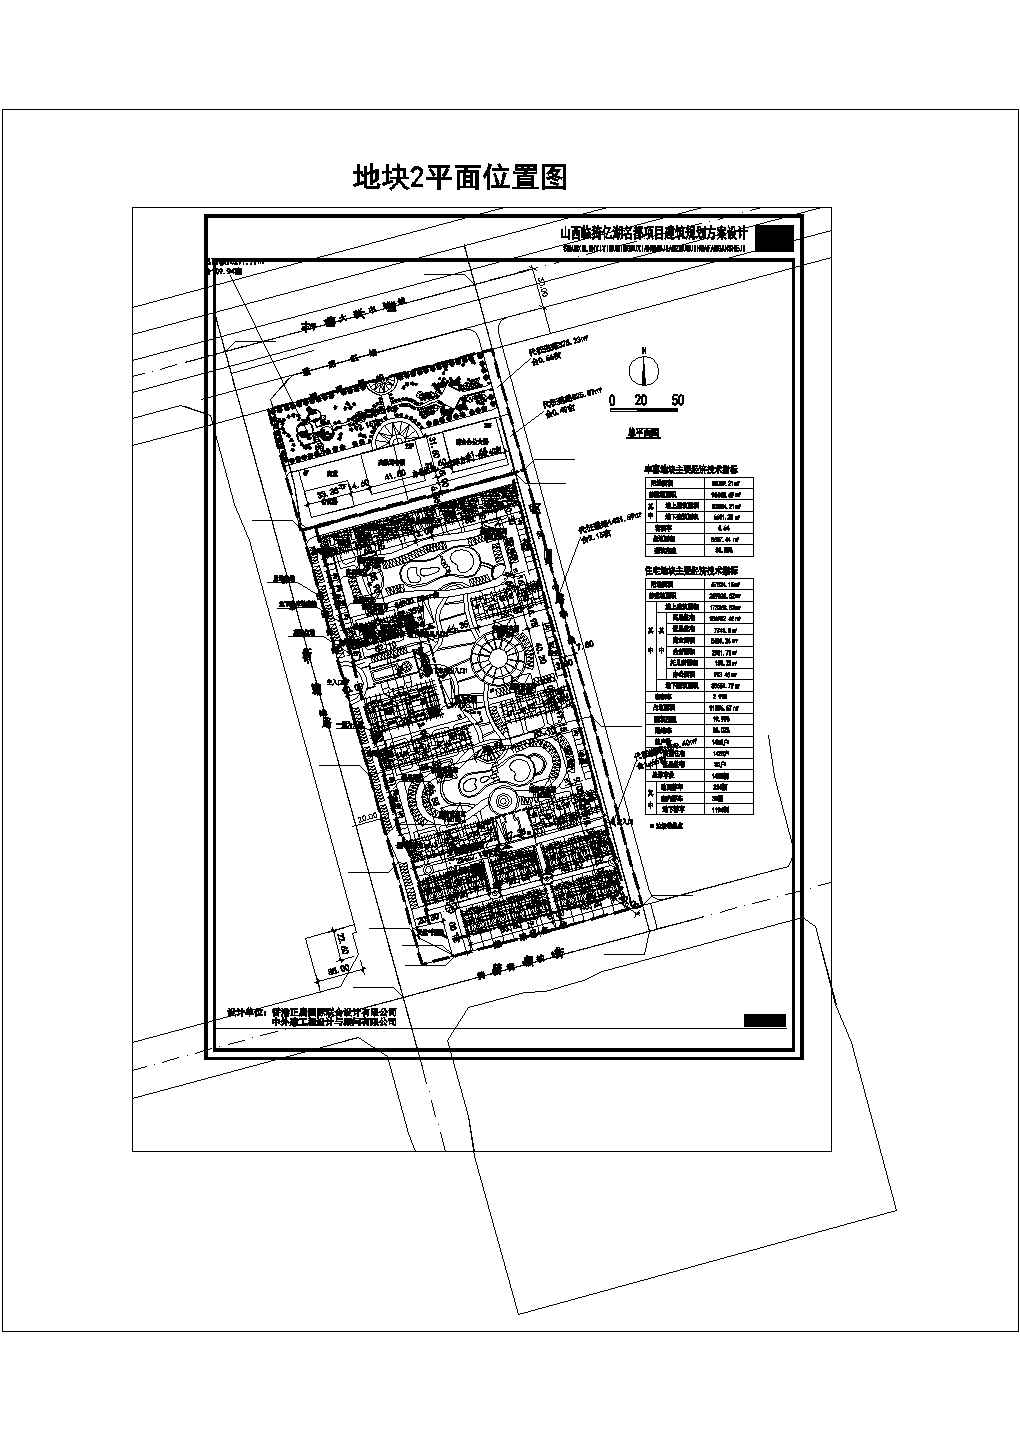 【苏州】某高档住宅小区整体规划总图